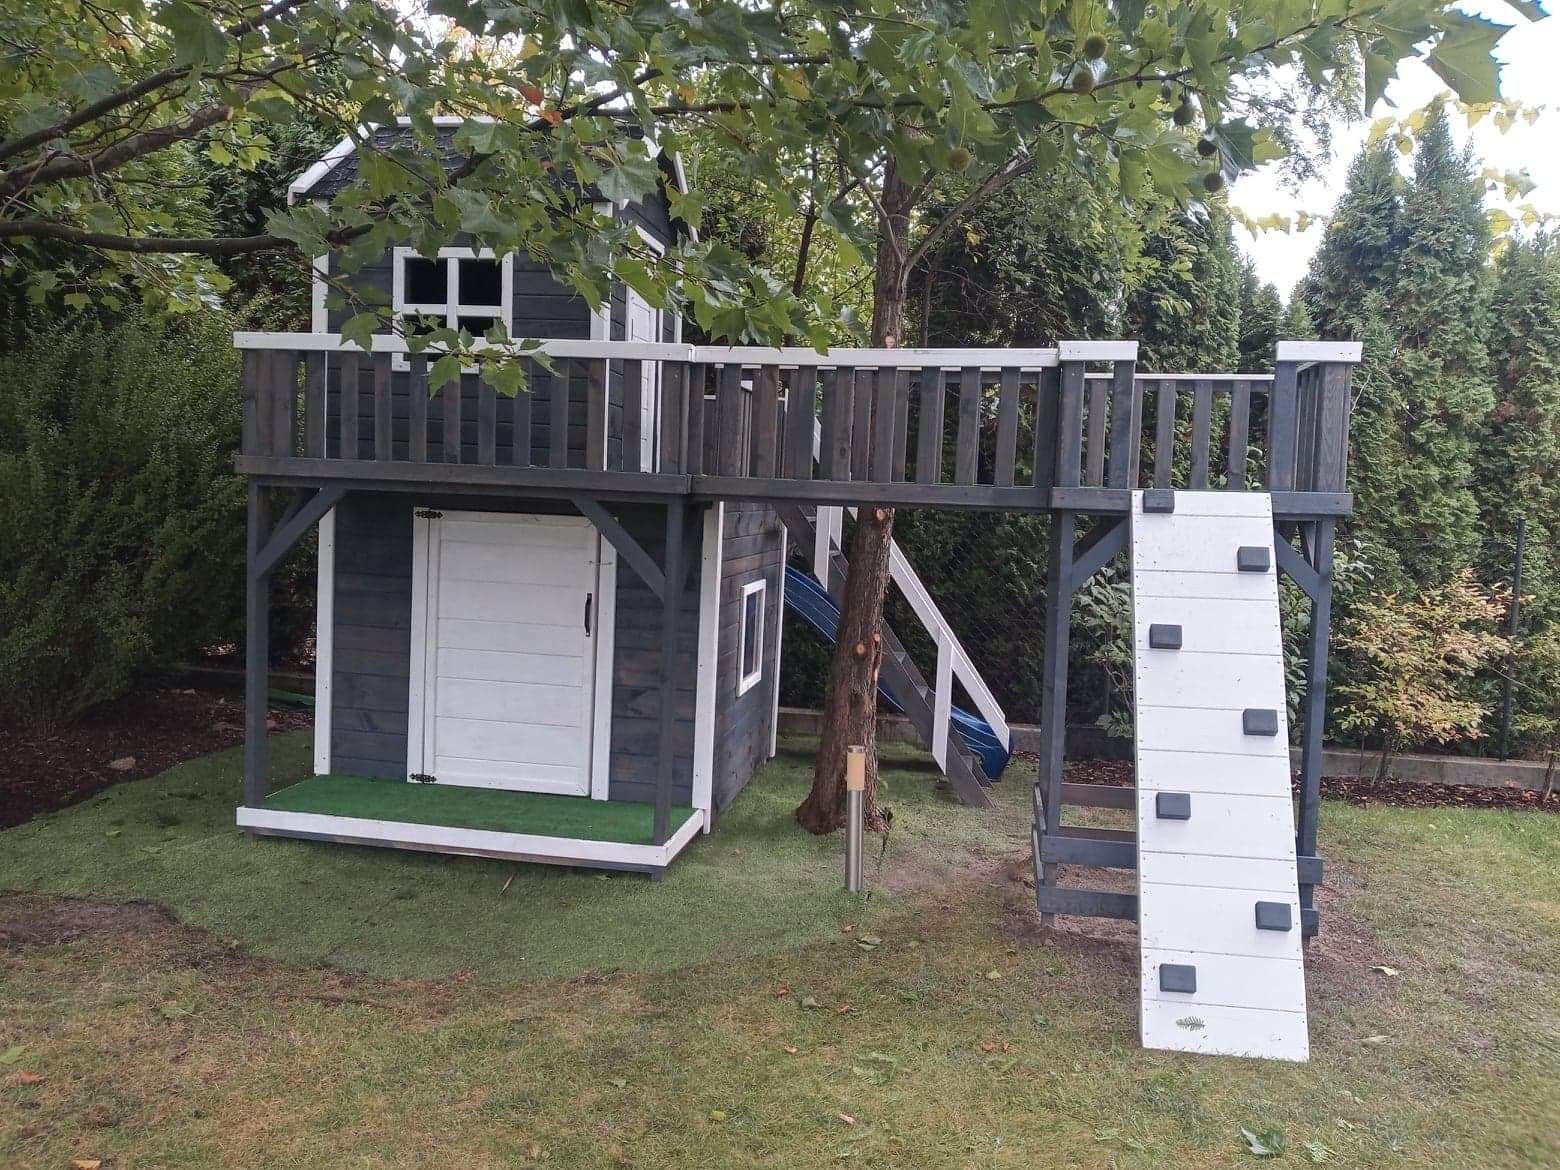 Duży domek dla dzieci plac zabaw drewniany (altany, donic